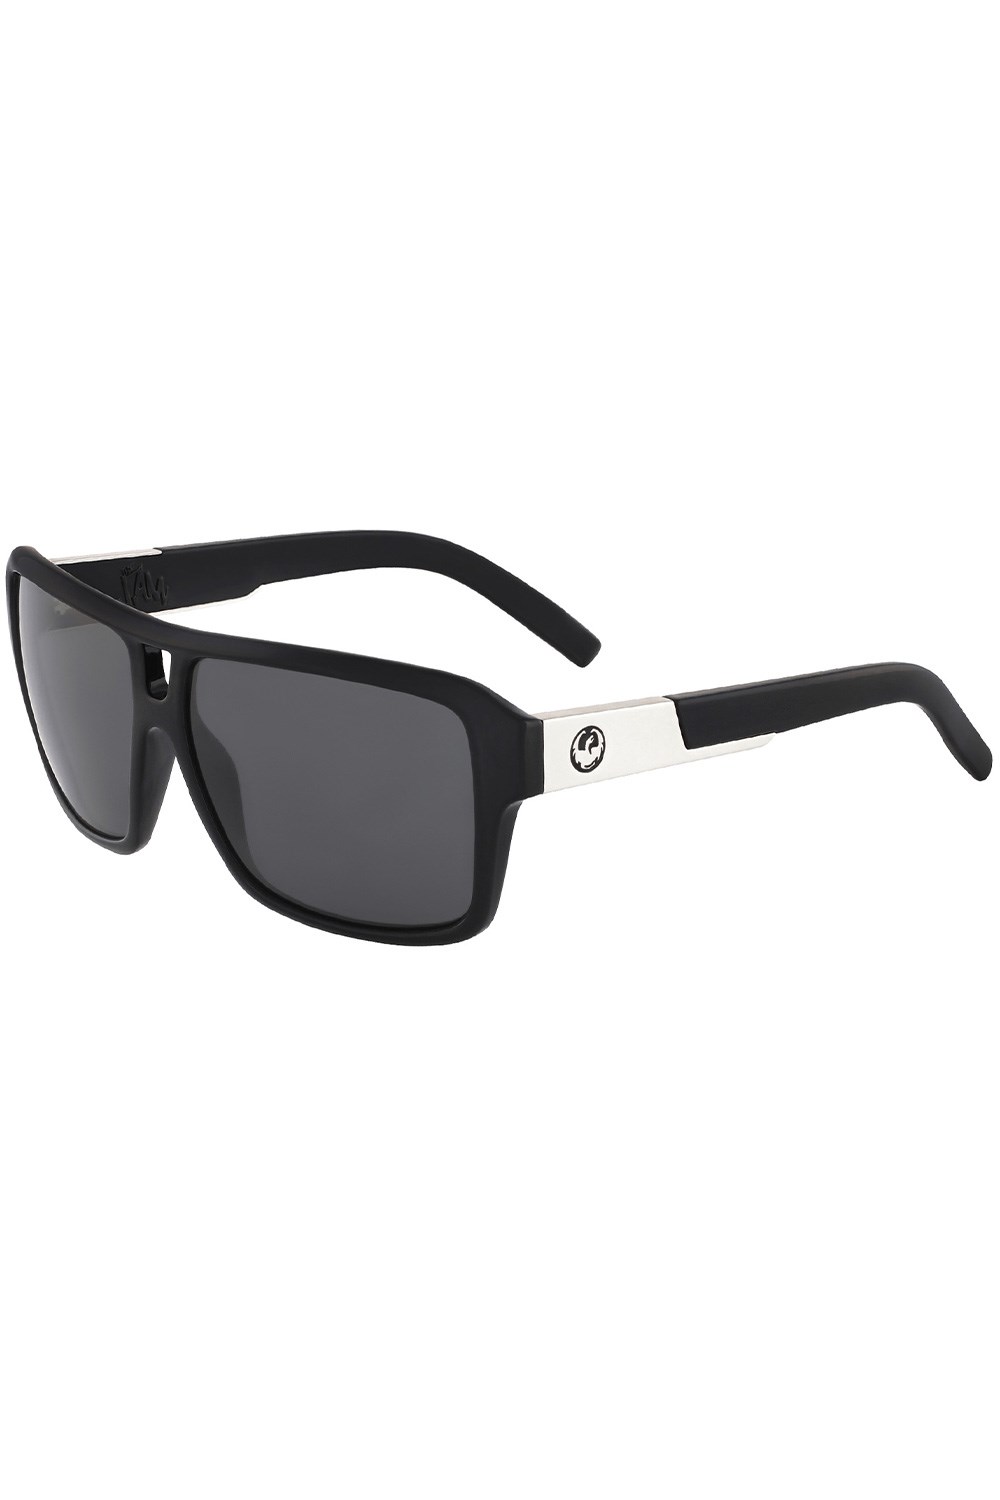 The Jam Unisex Sunglasses -